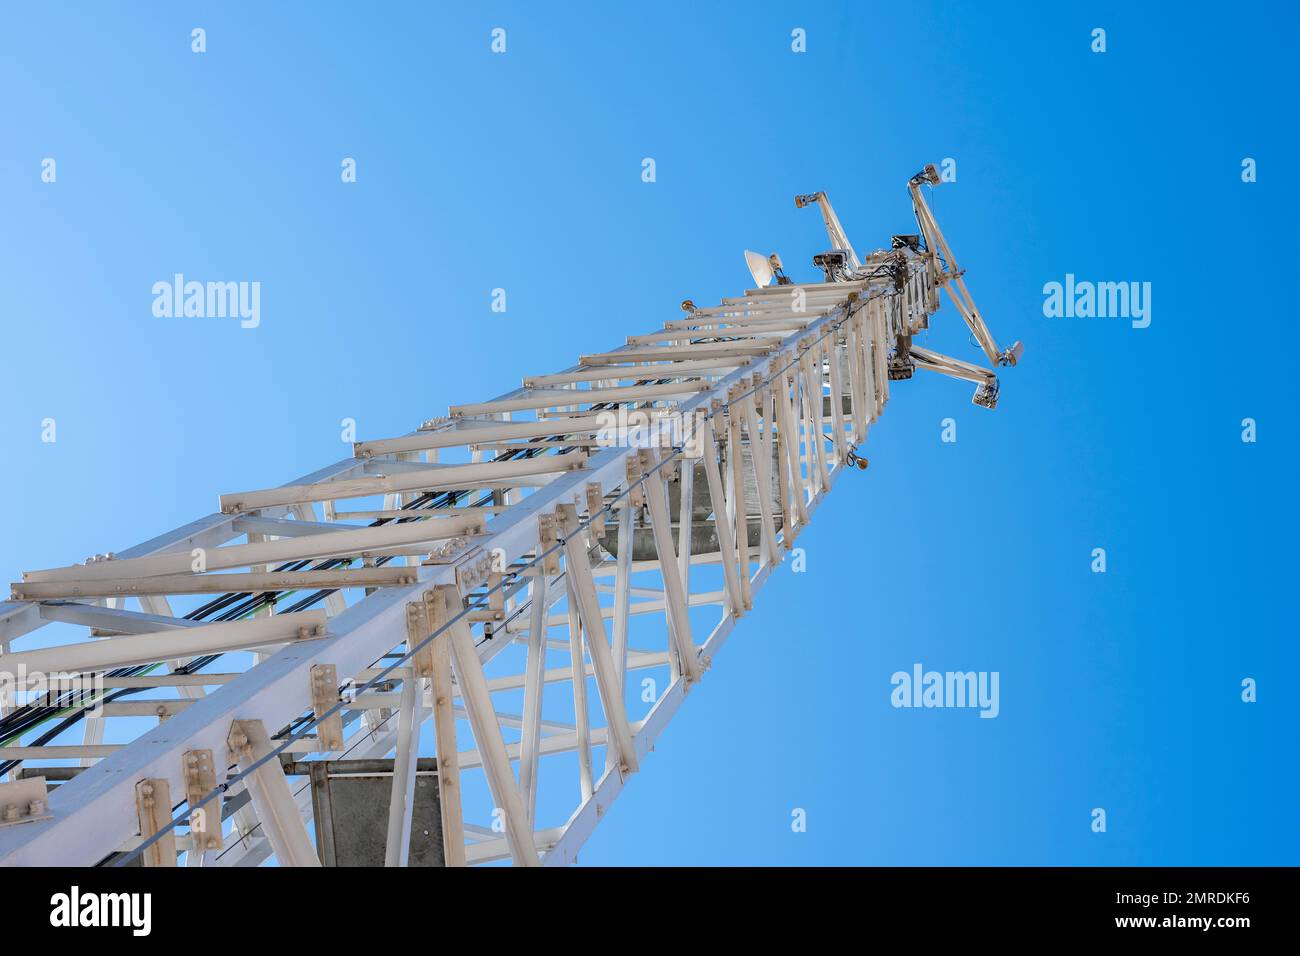 Gran torre de telecomunicaciones vista desde la base Stock Photo